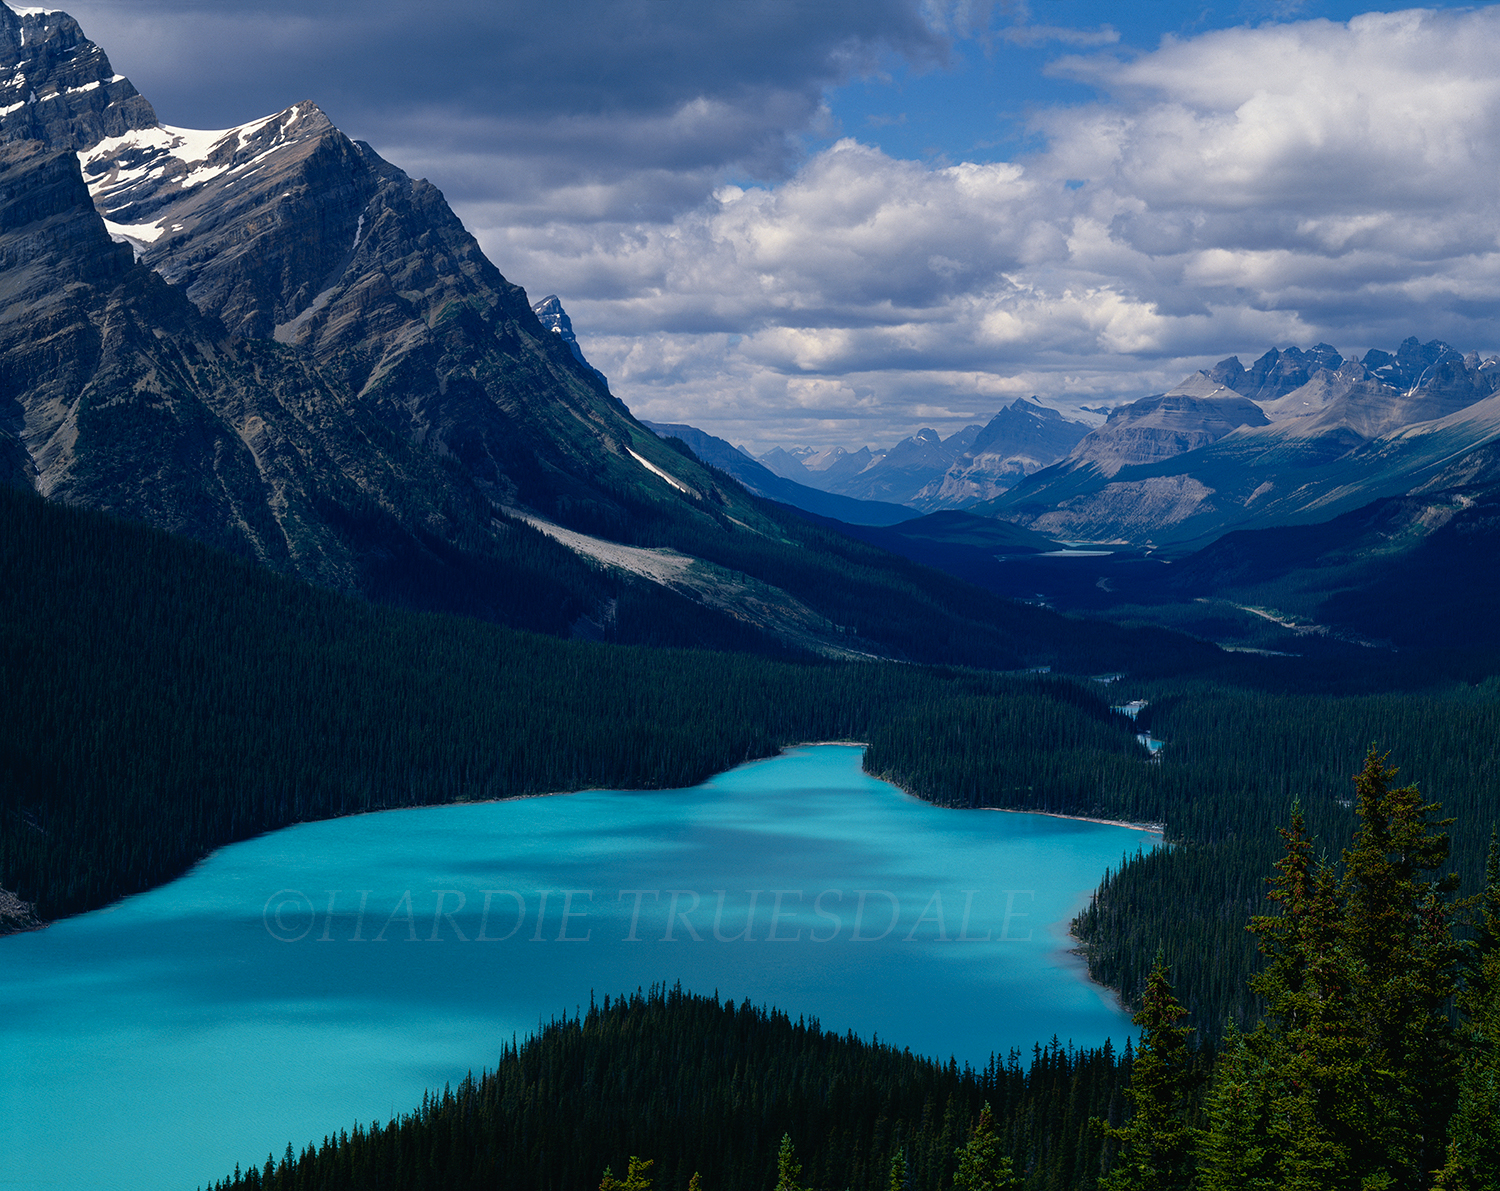  CR#015 "Peyto Lake, Banff National Park, Canada 